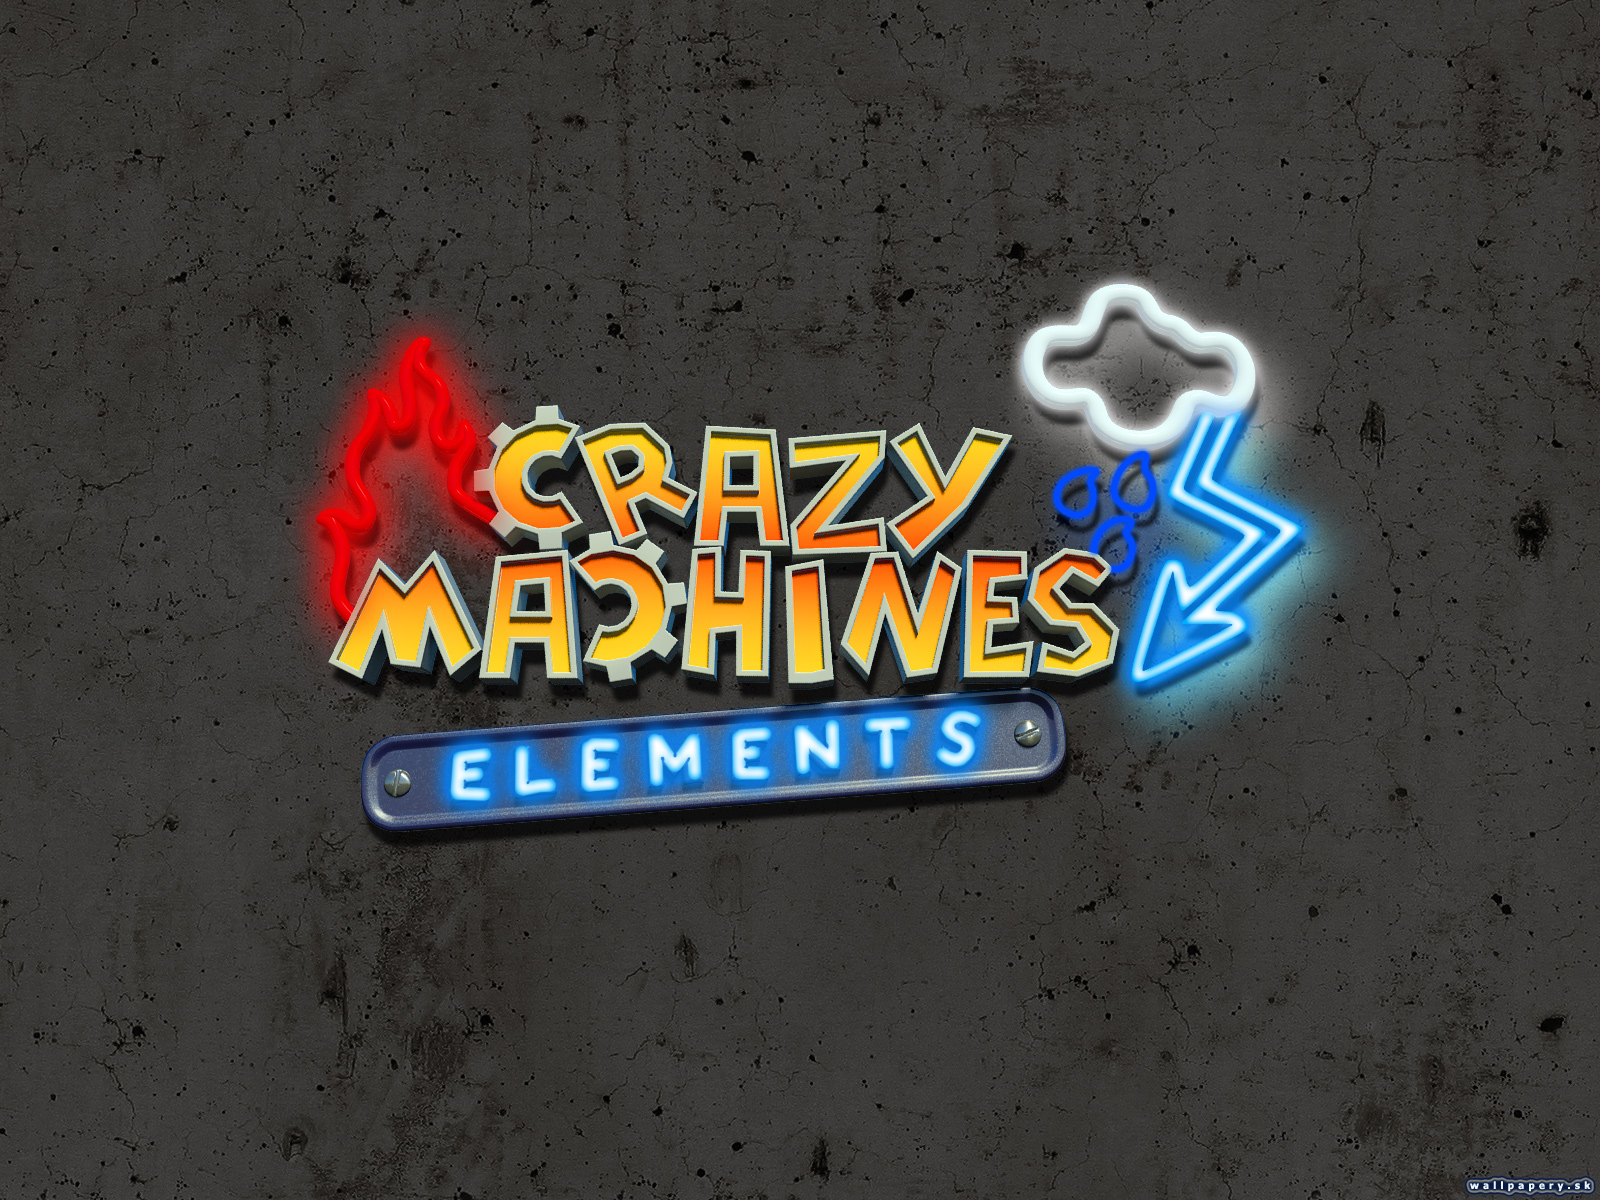 Crazy Machines Elements - wallpaper 3